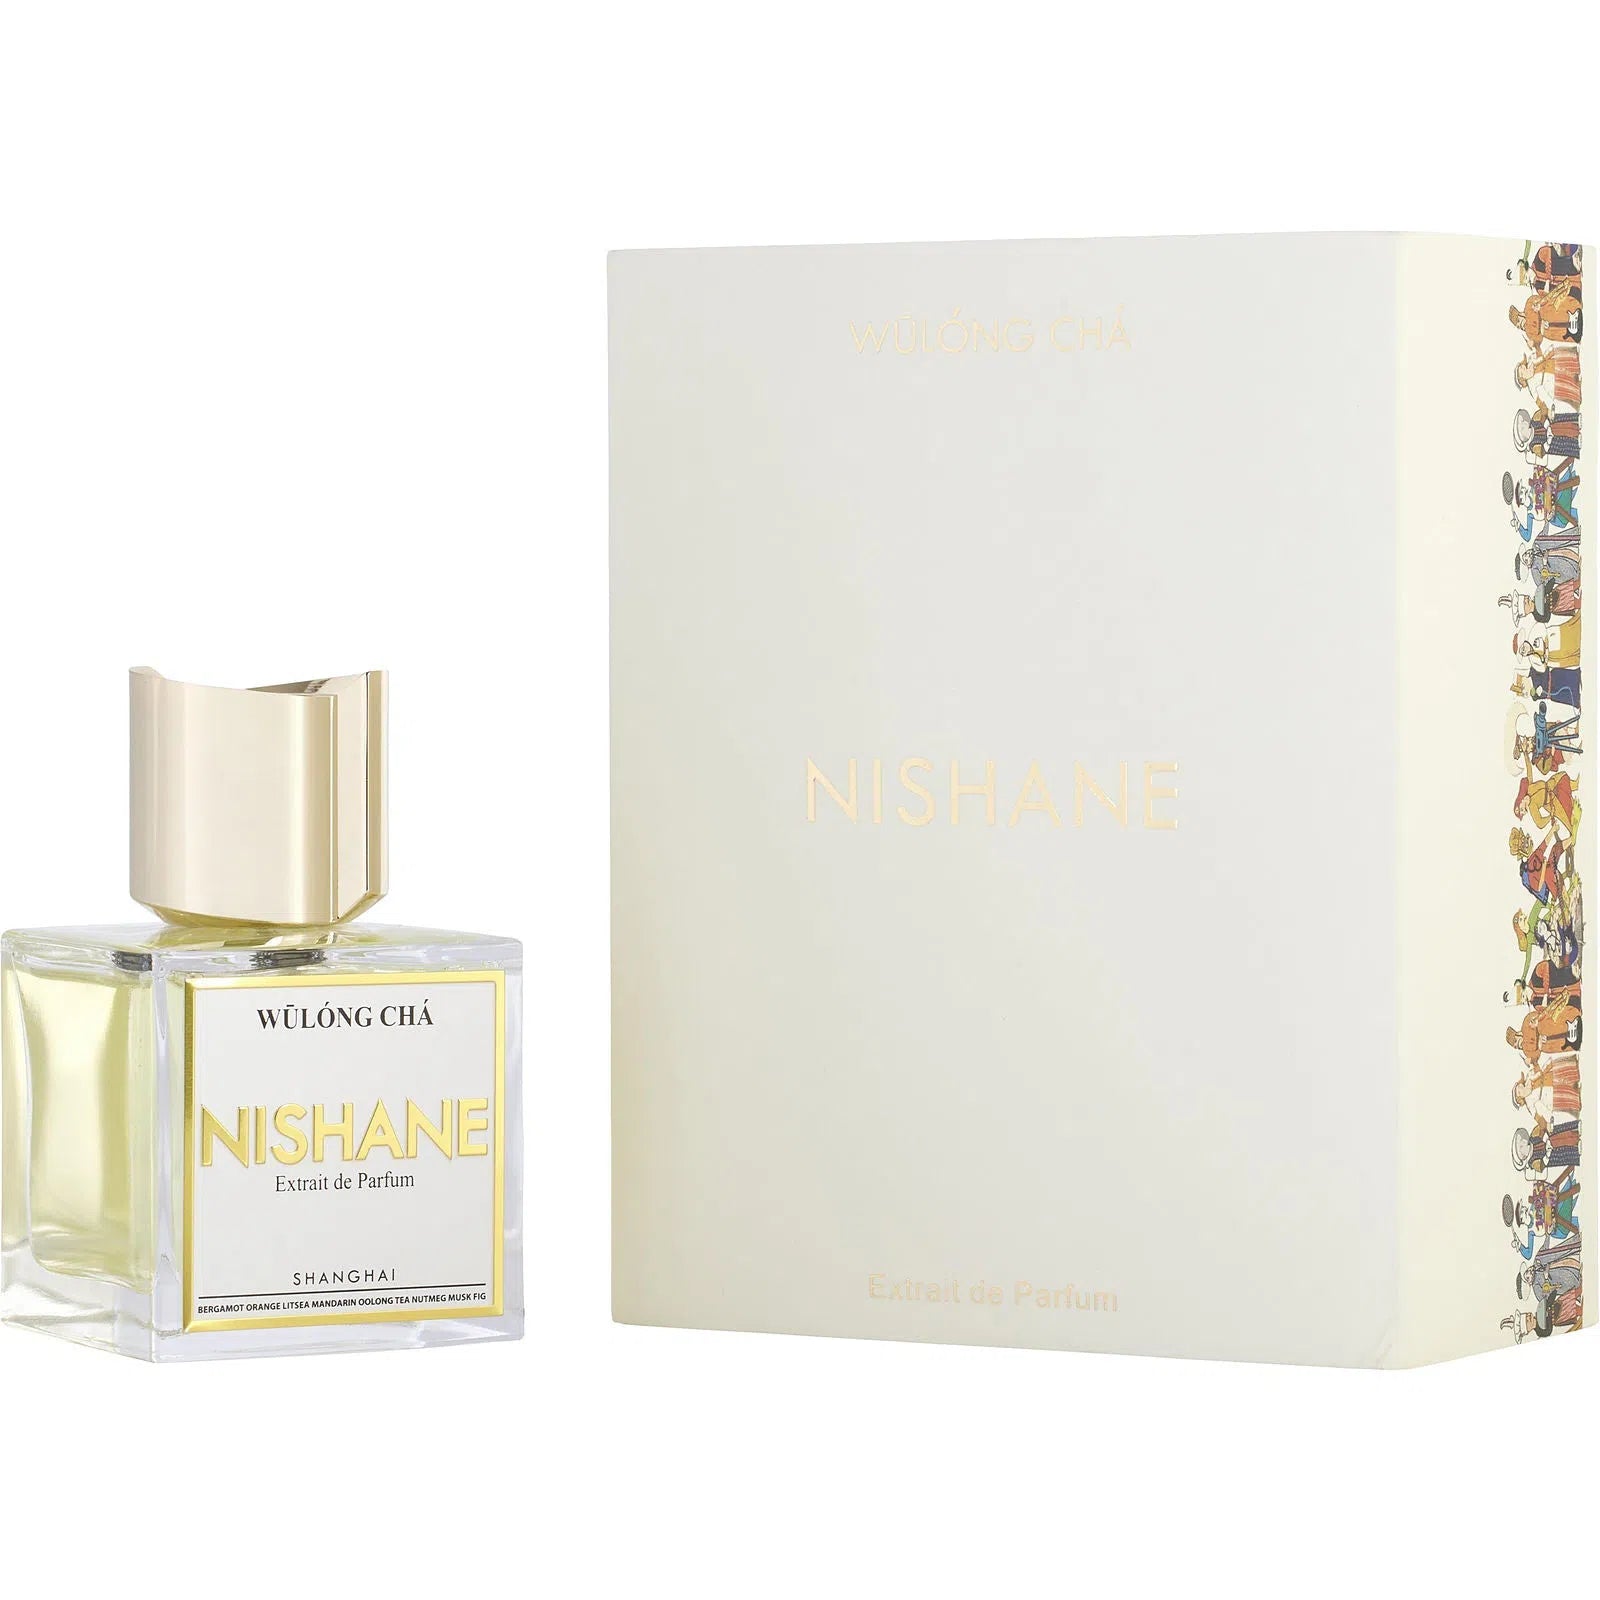 Perfume Nishane Wulong Cha Extrait de Parfum (U) / 100 ml - 8681008055227- Prive Perfumes Honduras